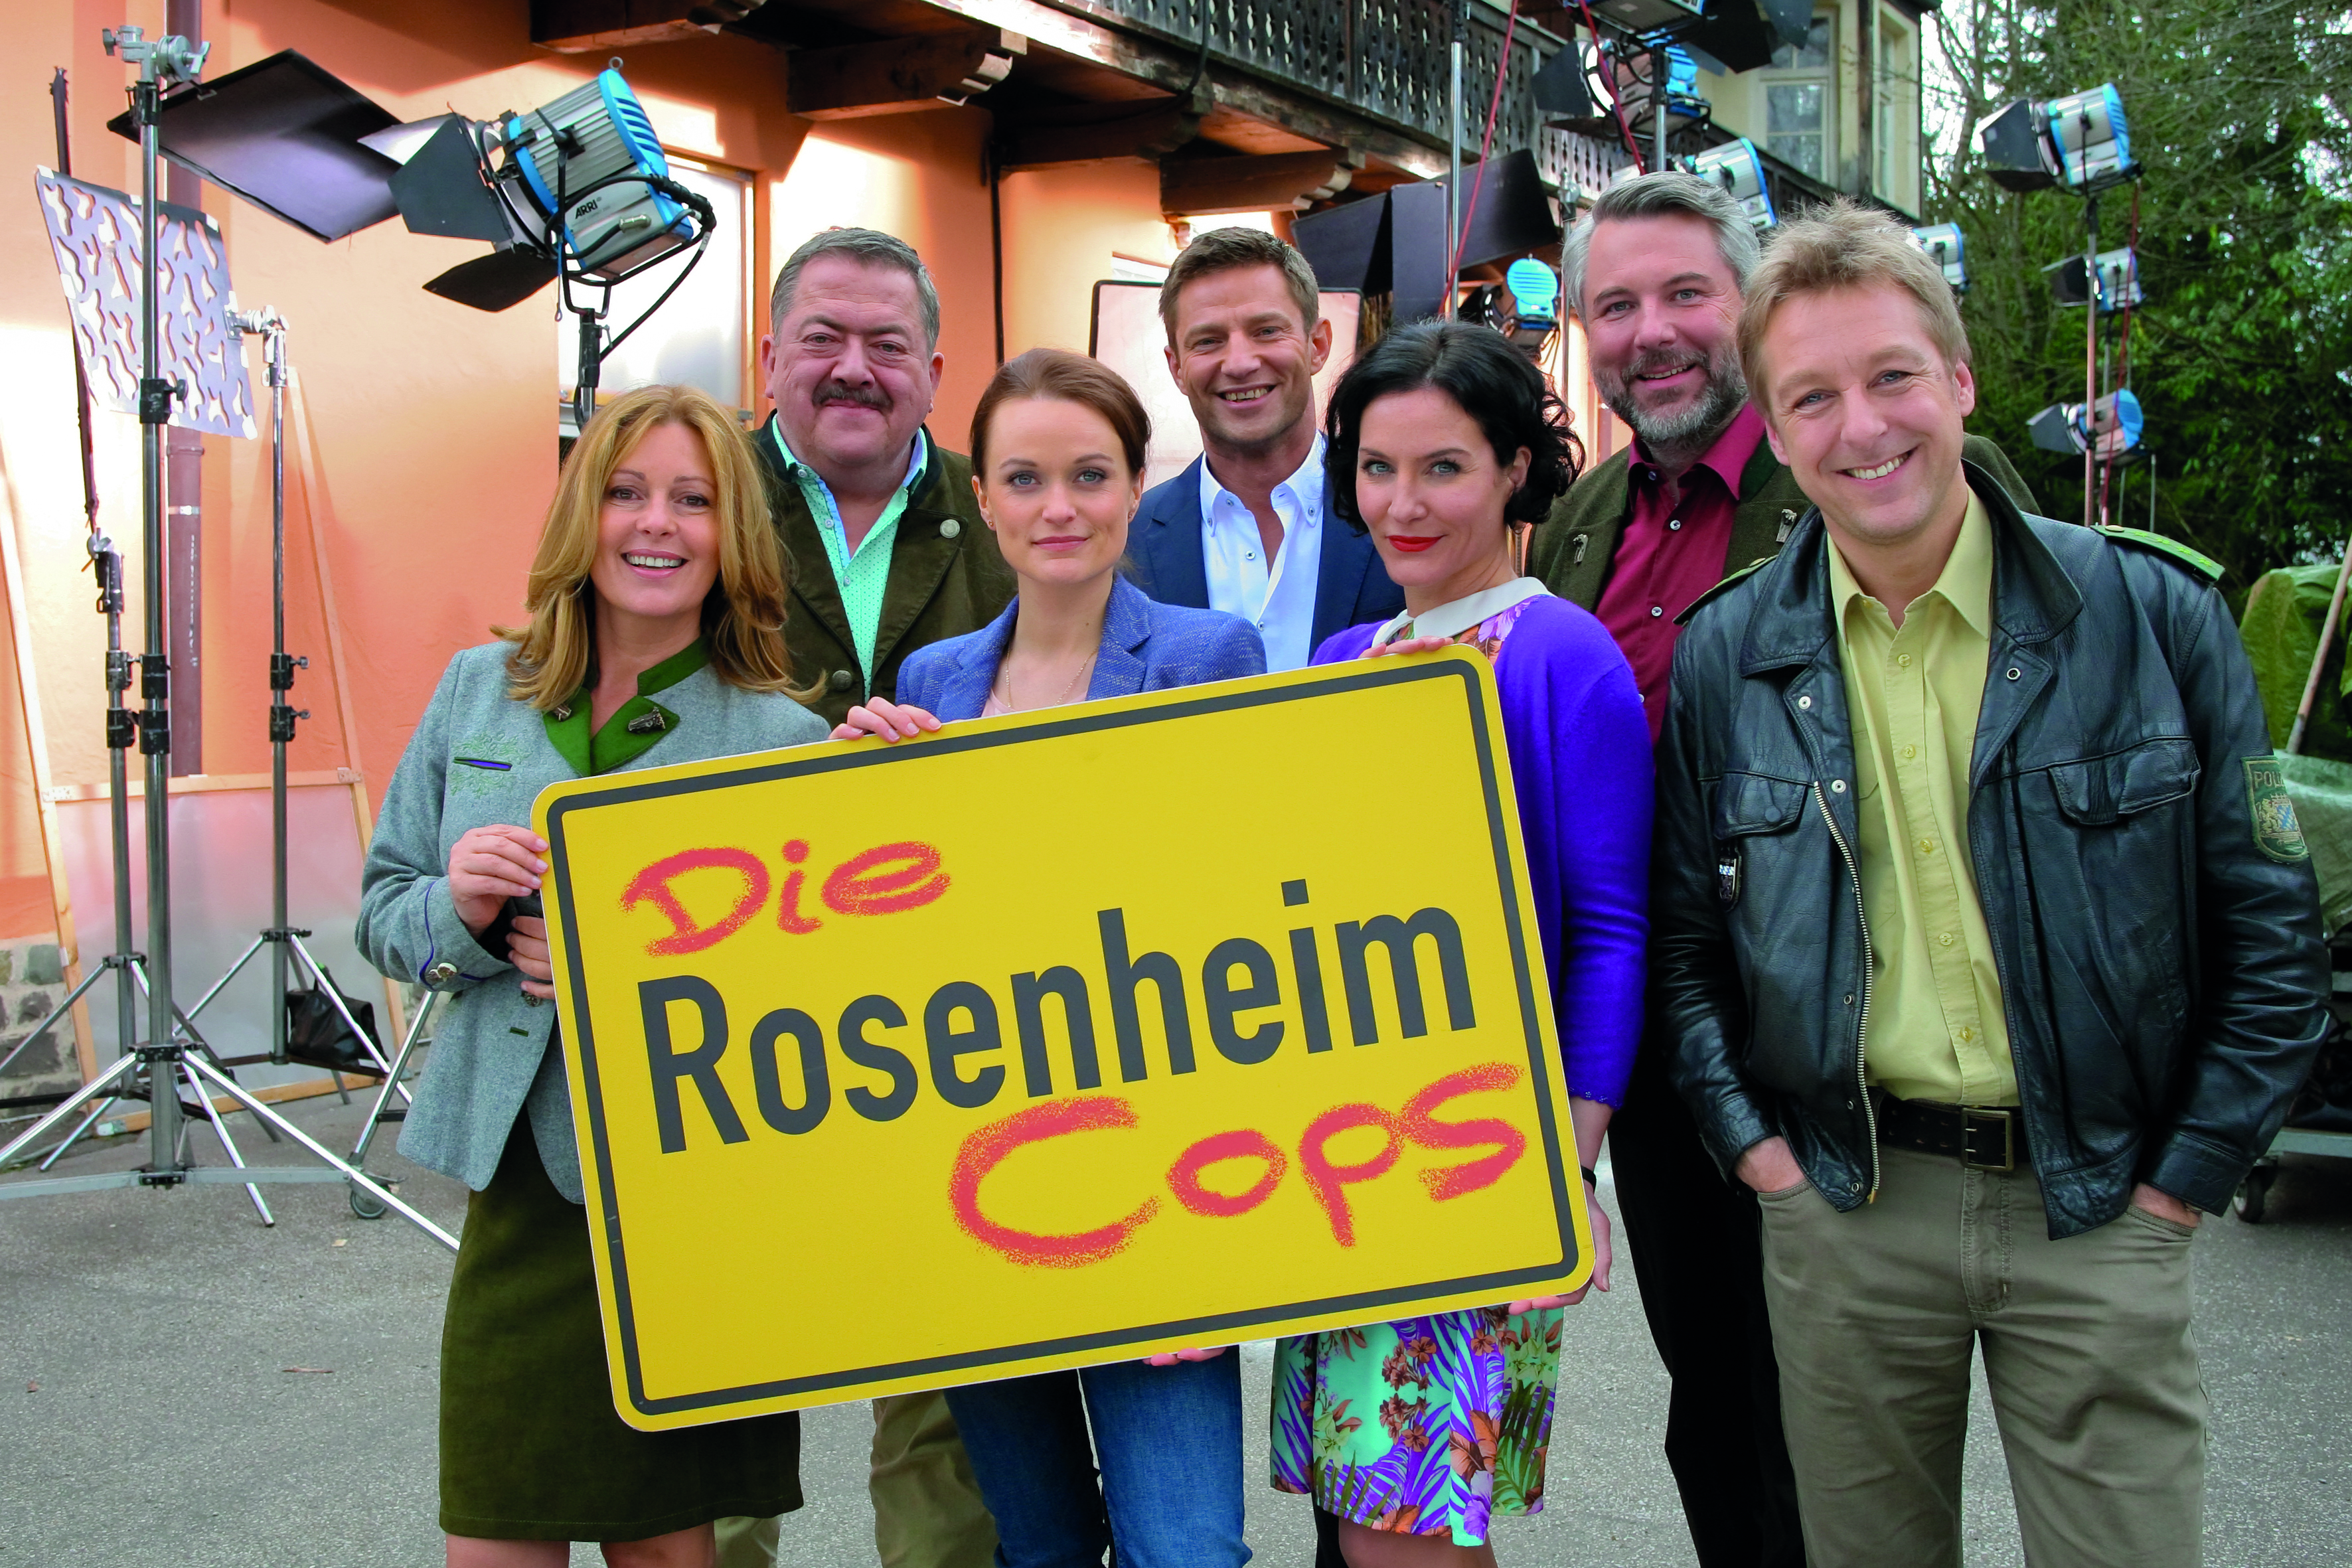 rosenheim cops tour erfahrungen